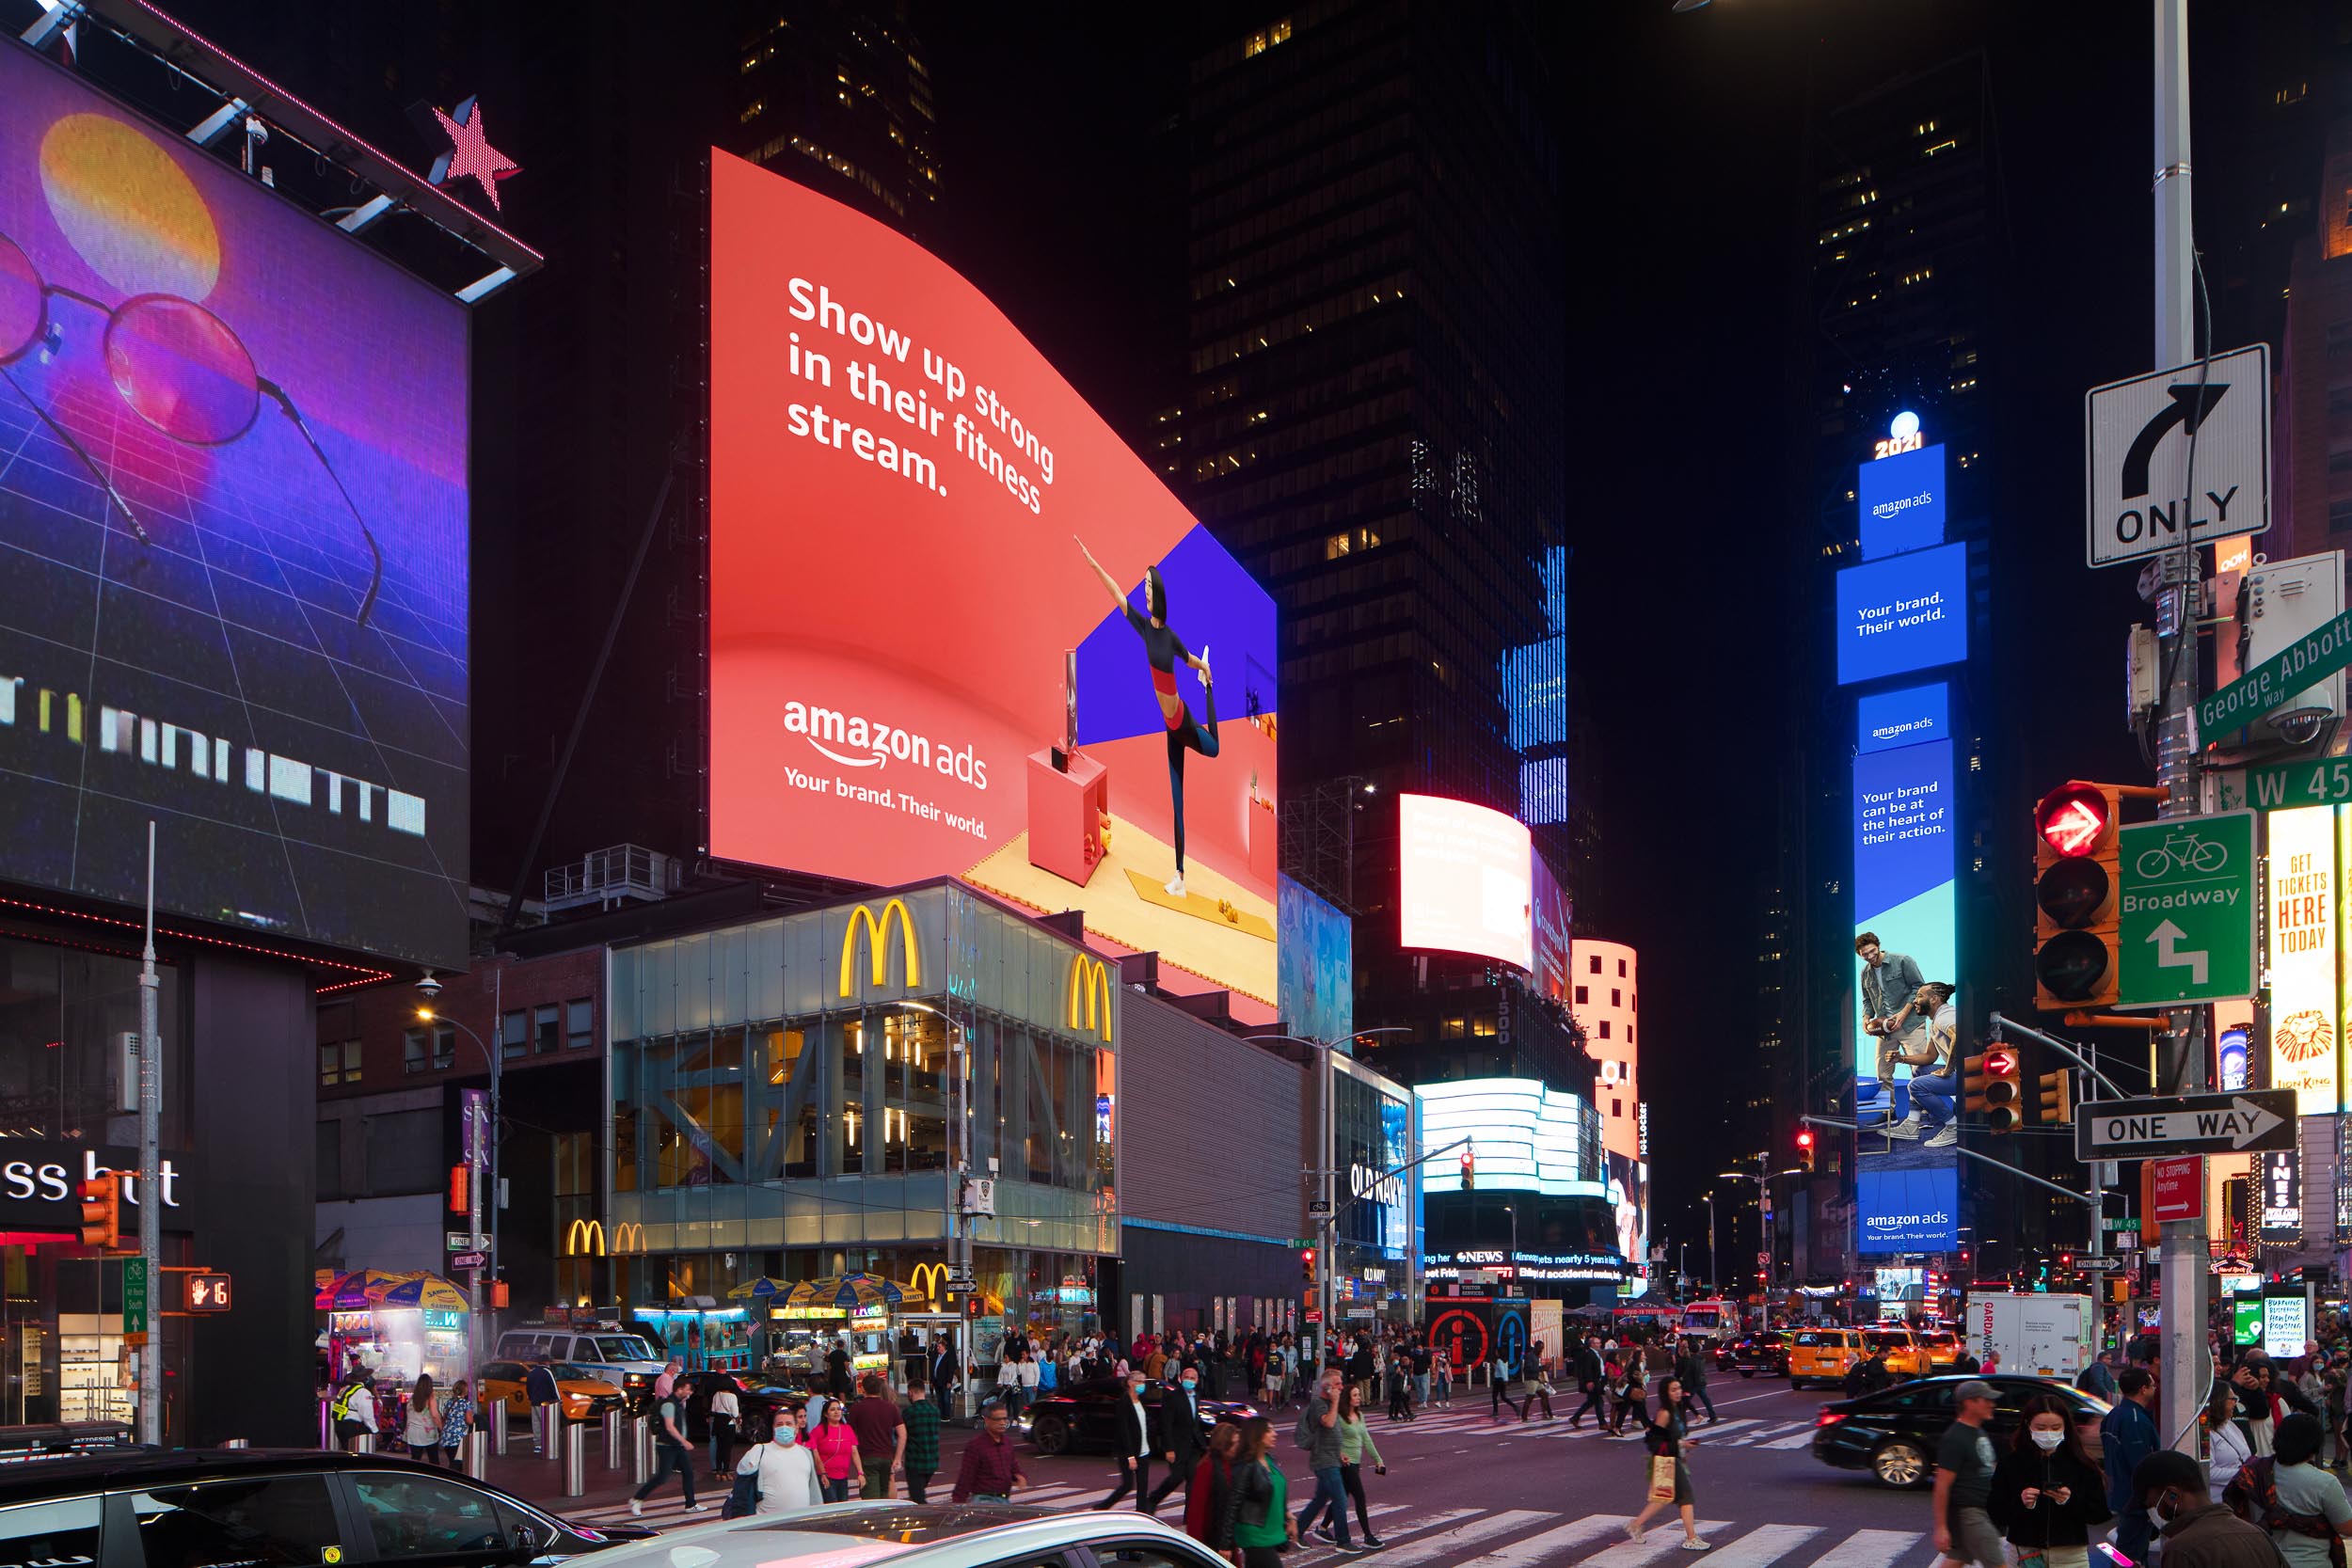 Amazon Ads - New York City